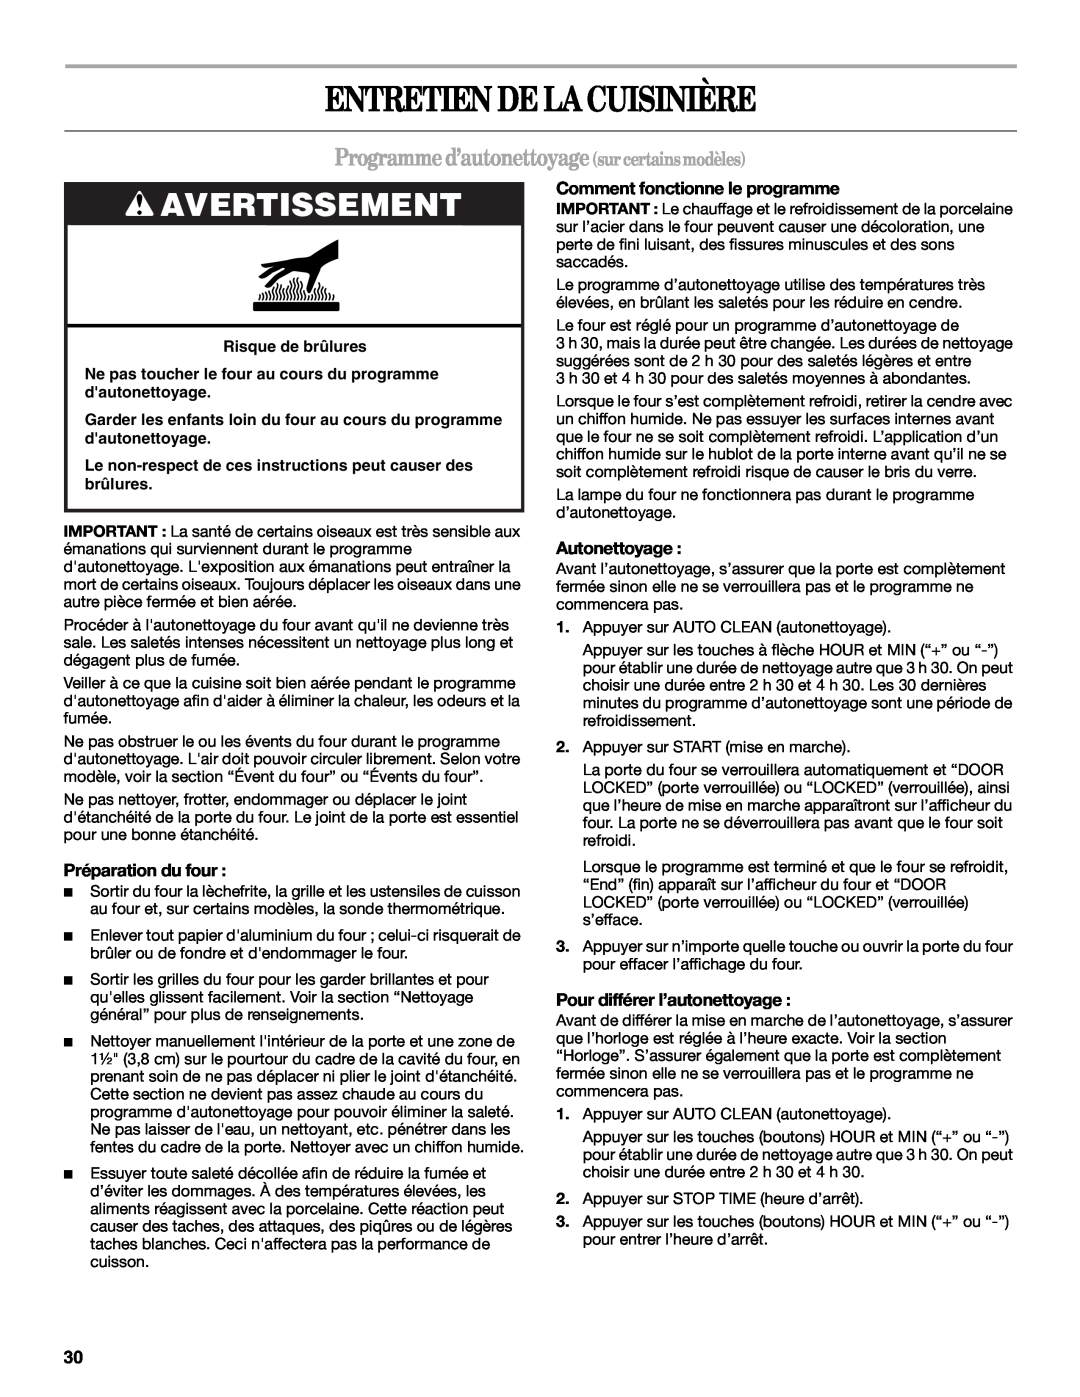 Whirlpool W10086240 manual Entretien De La Cuisinière, Programme d’autonettoyage sur certains modèles, Avertissement 